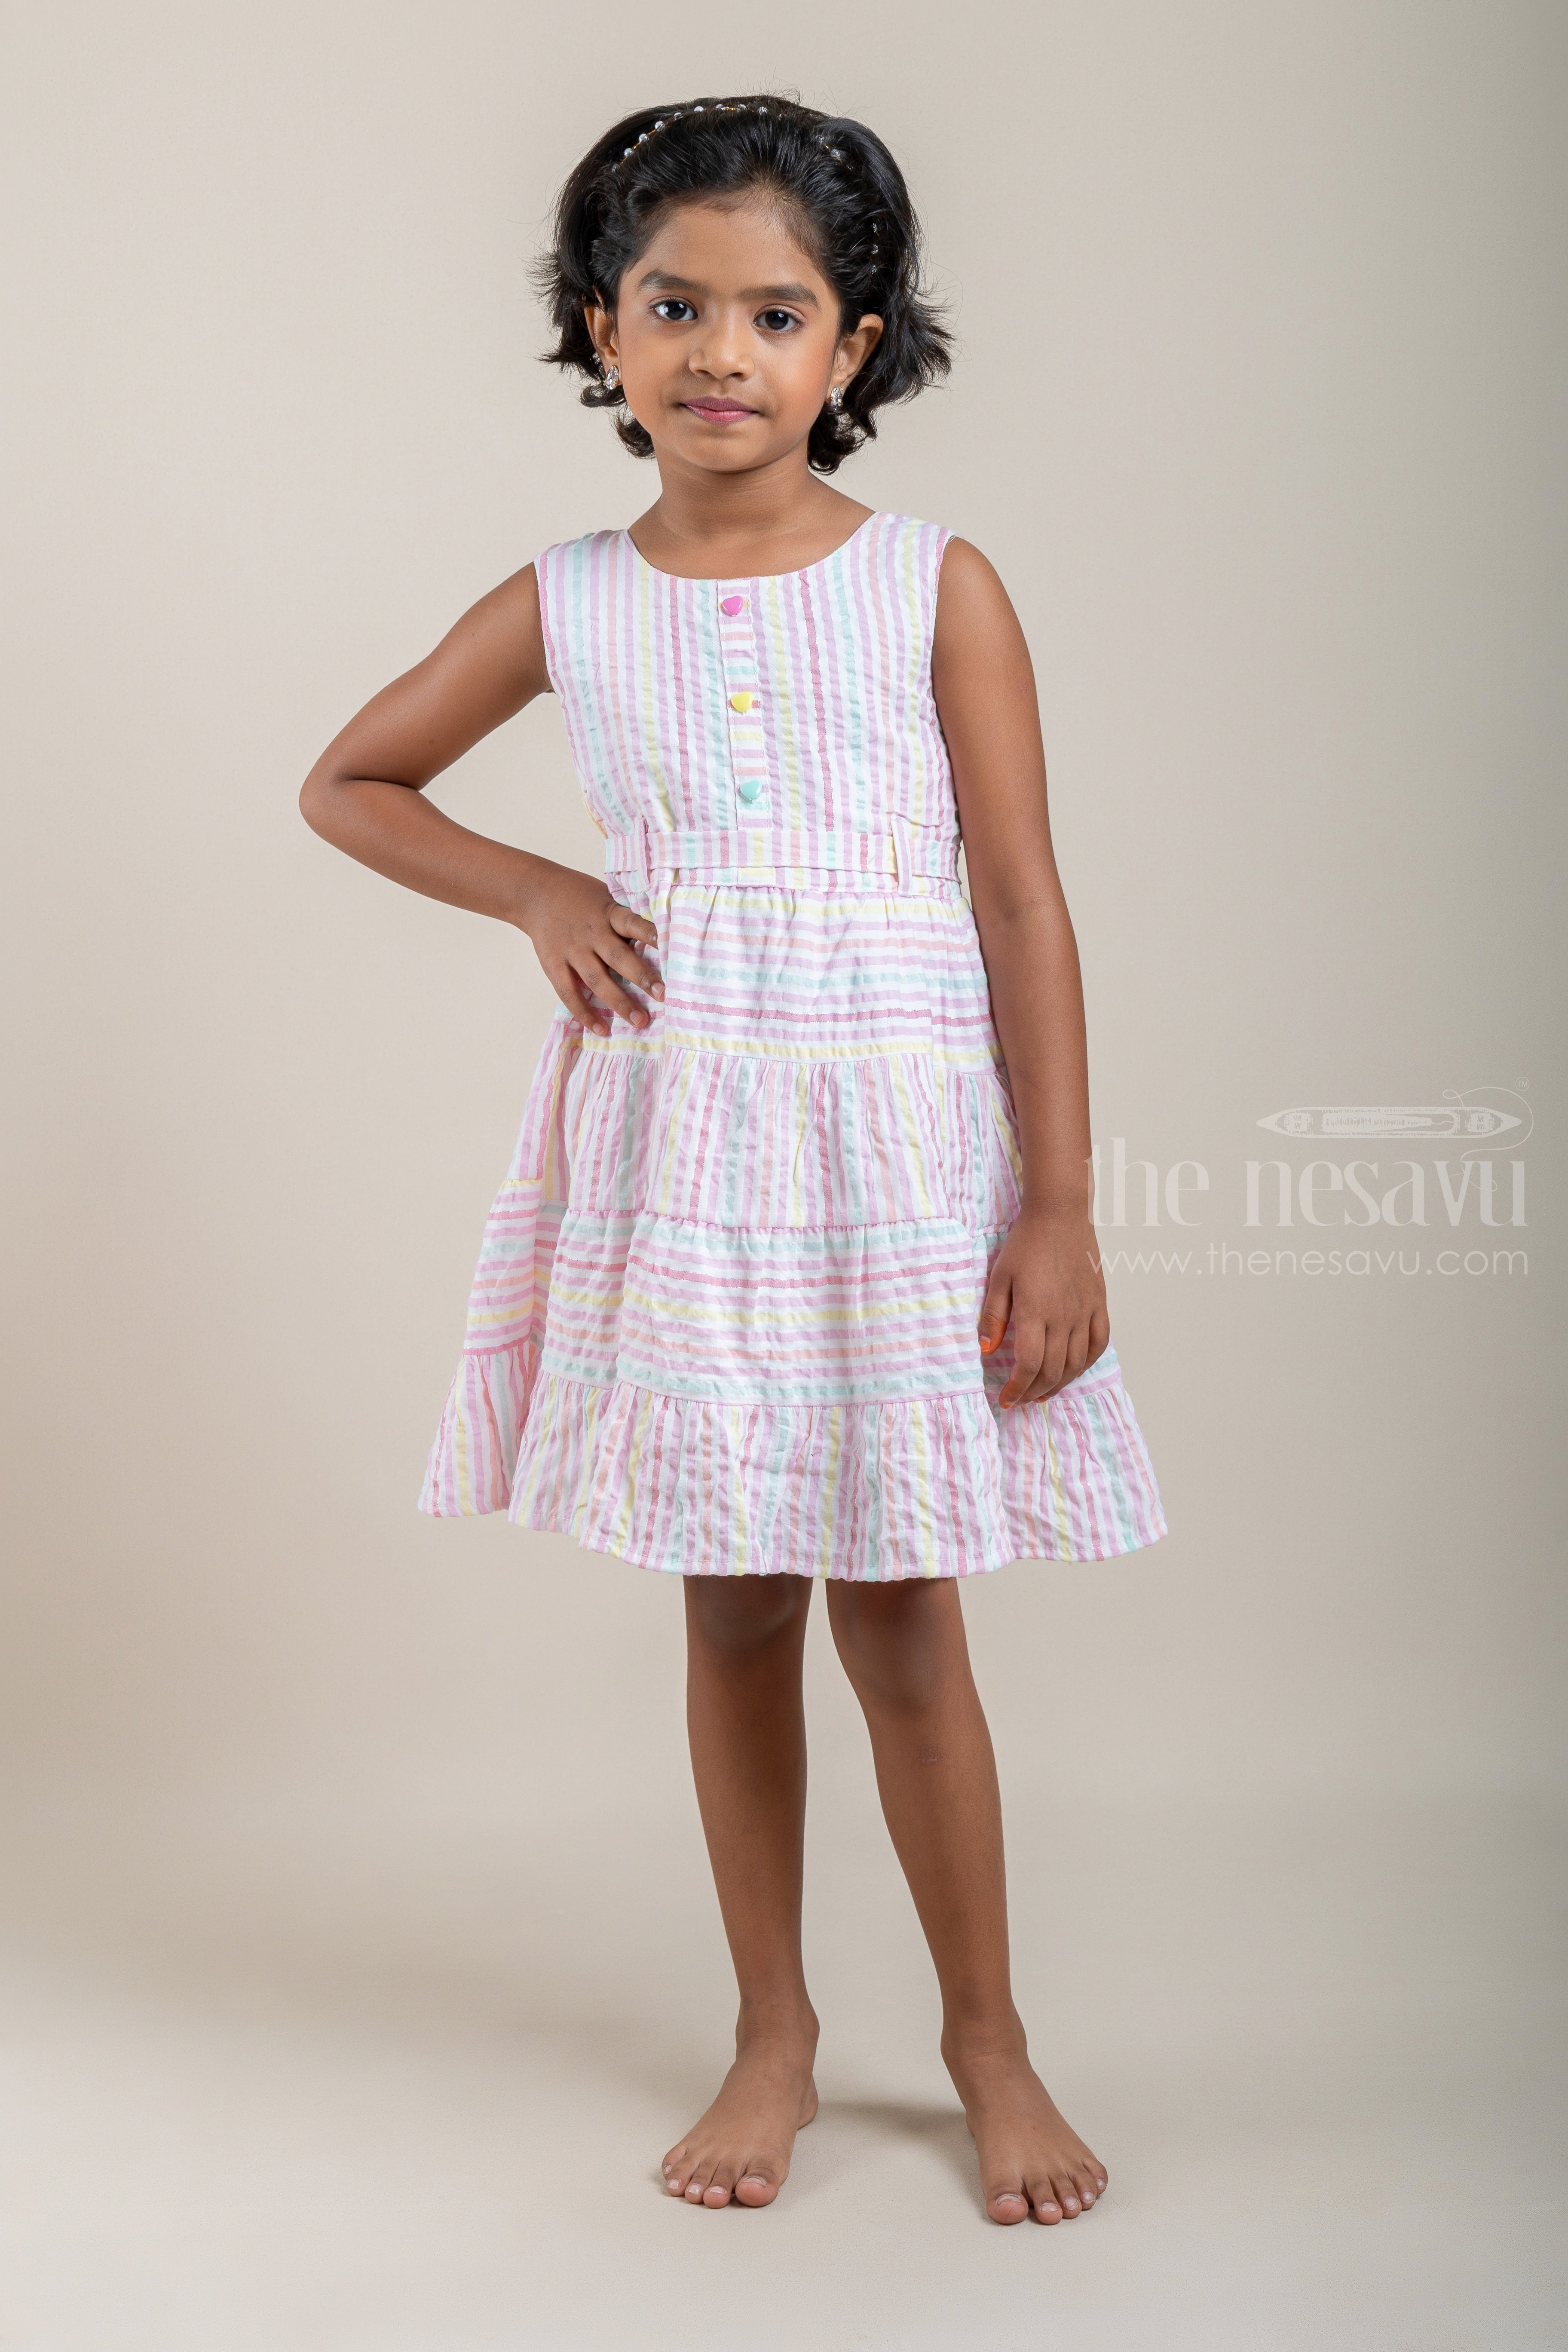 Girls Dresses  Frocks Buy Modern Dress for Girls  Mothercare India